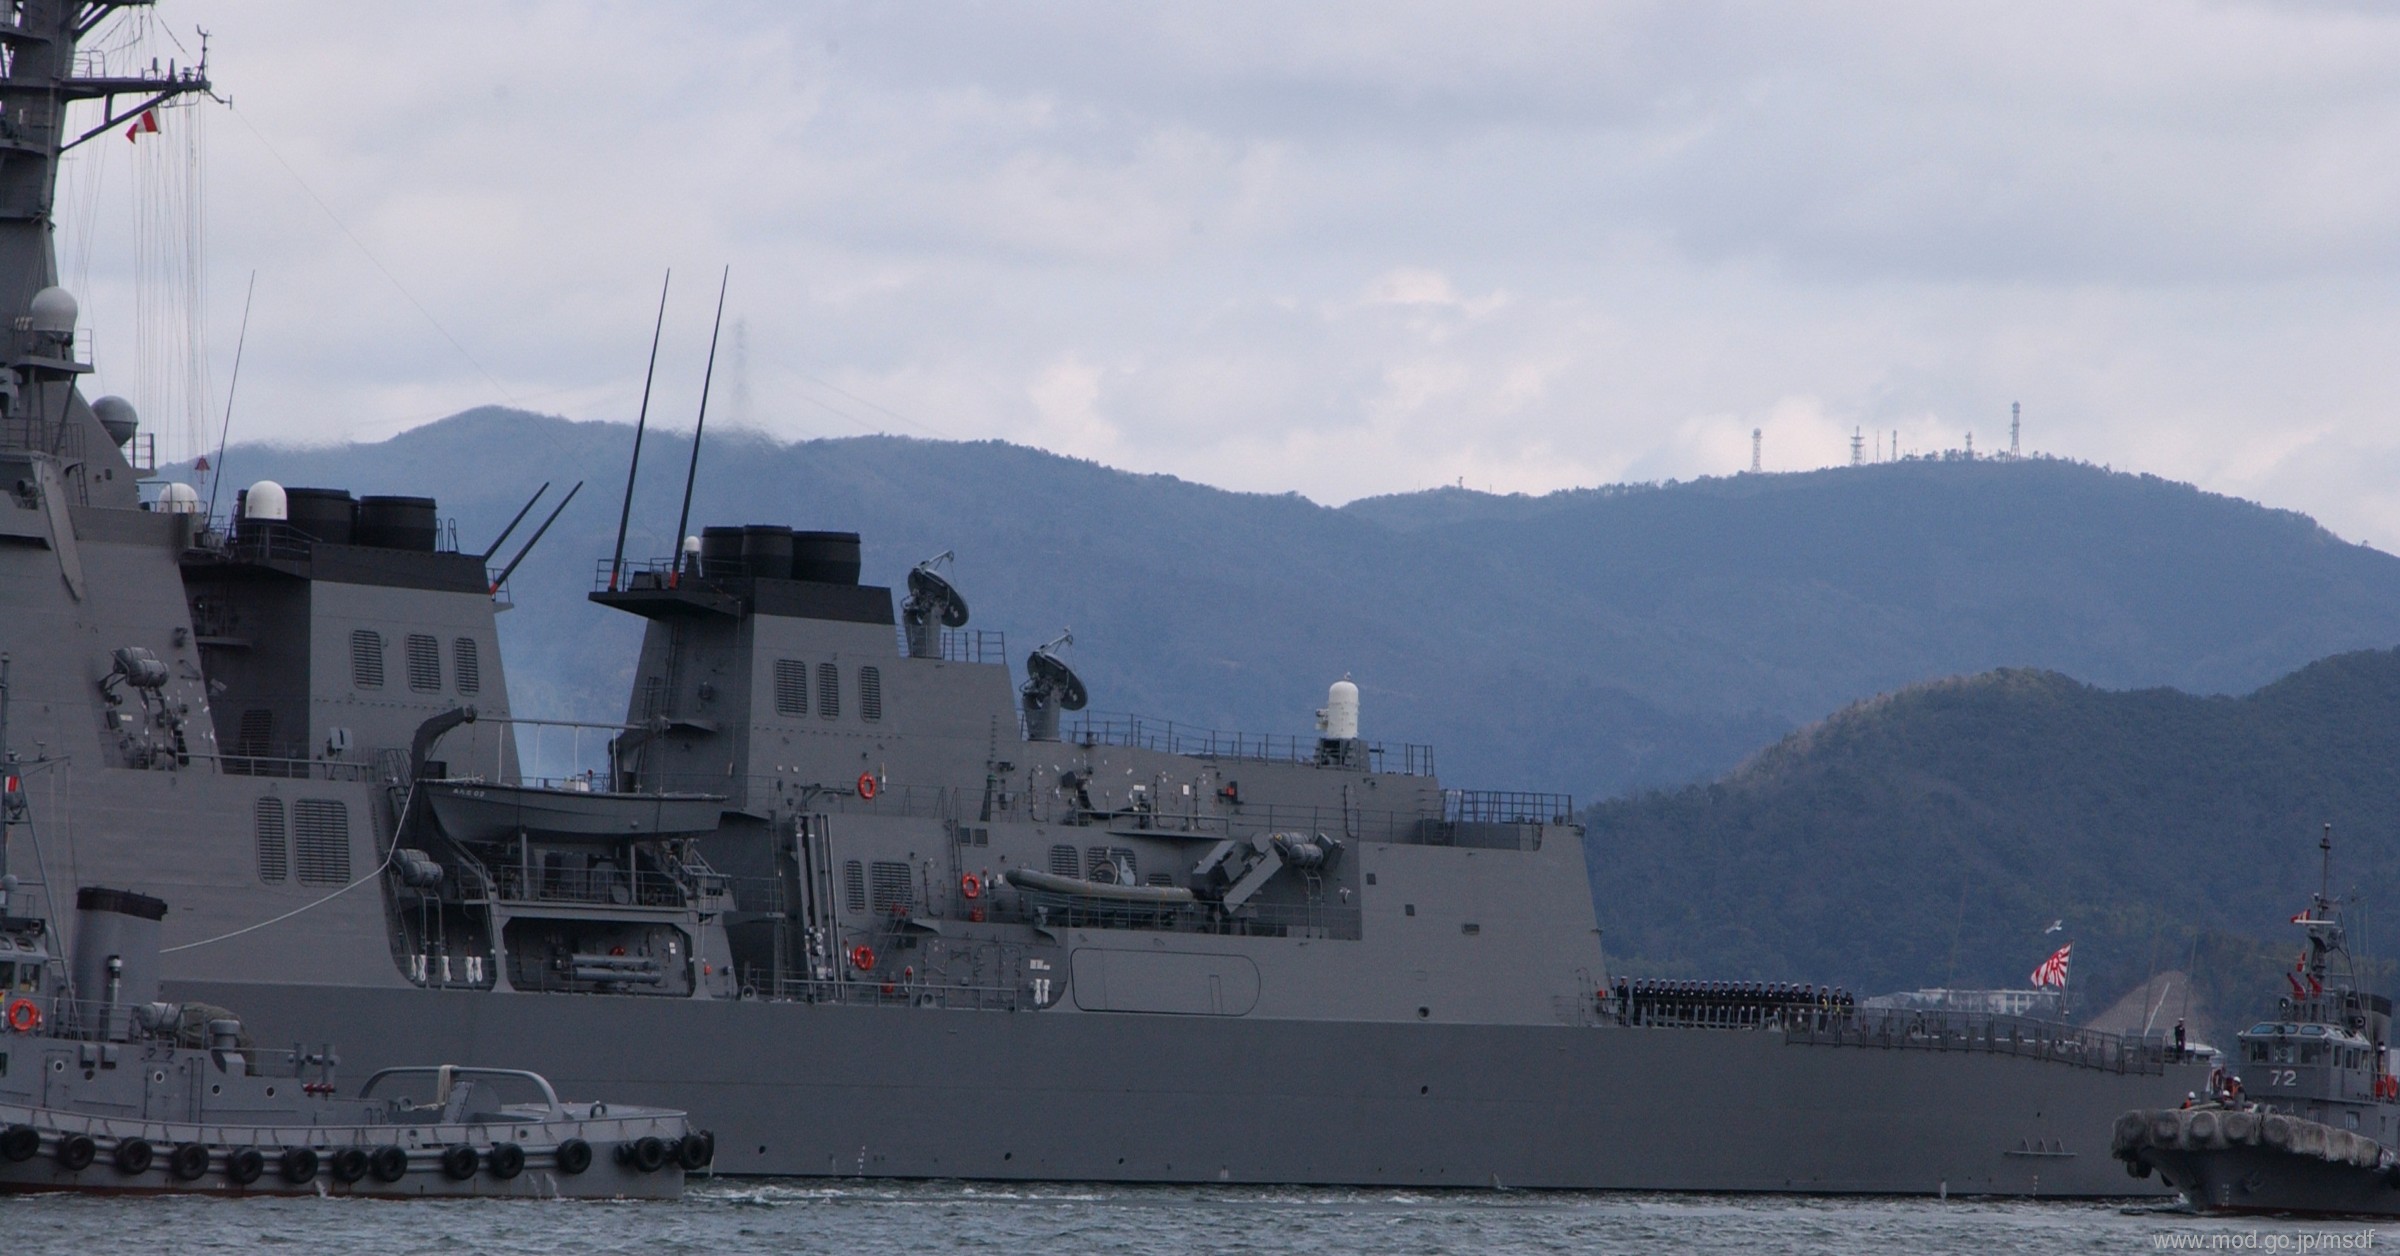 ddg-177 jds atago guided missile destroyer japan maritime self defense force jmsdf 07